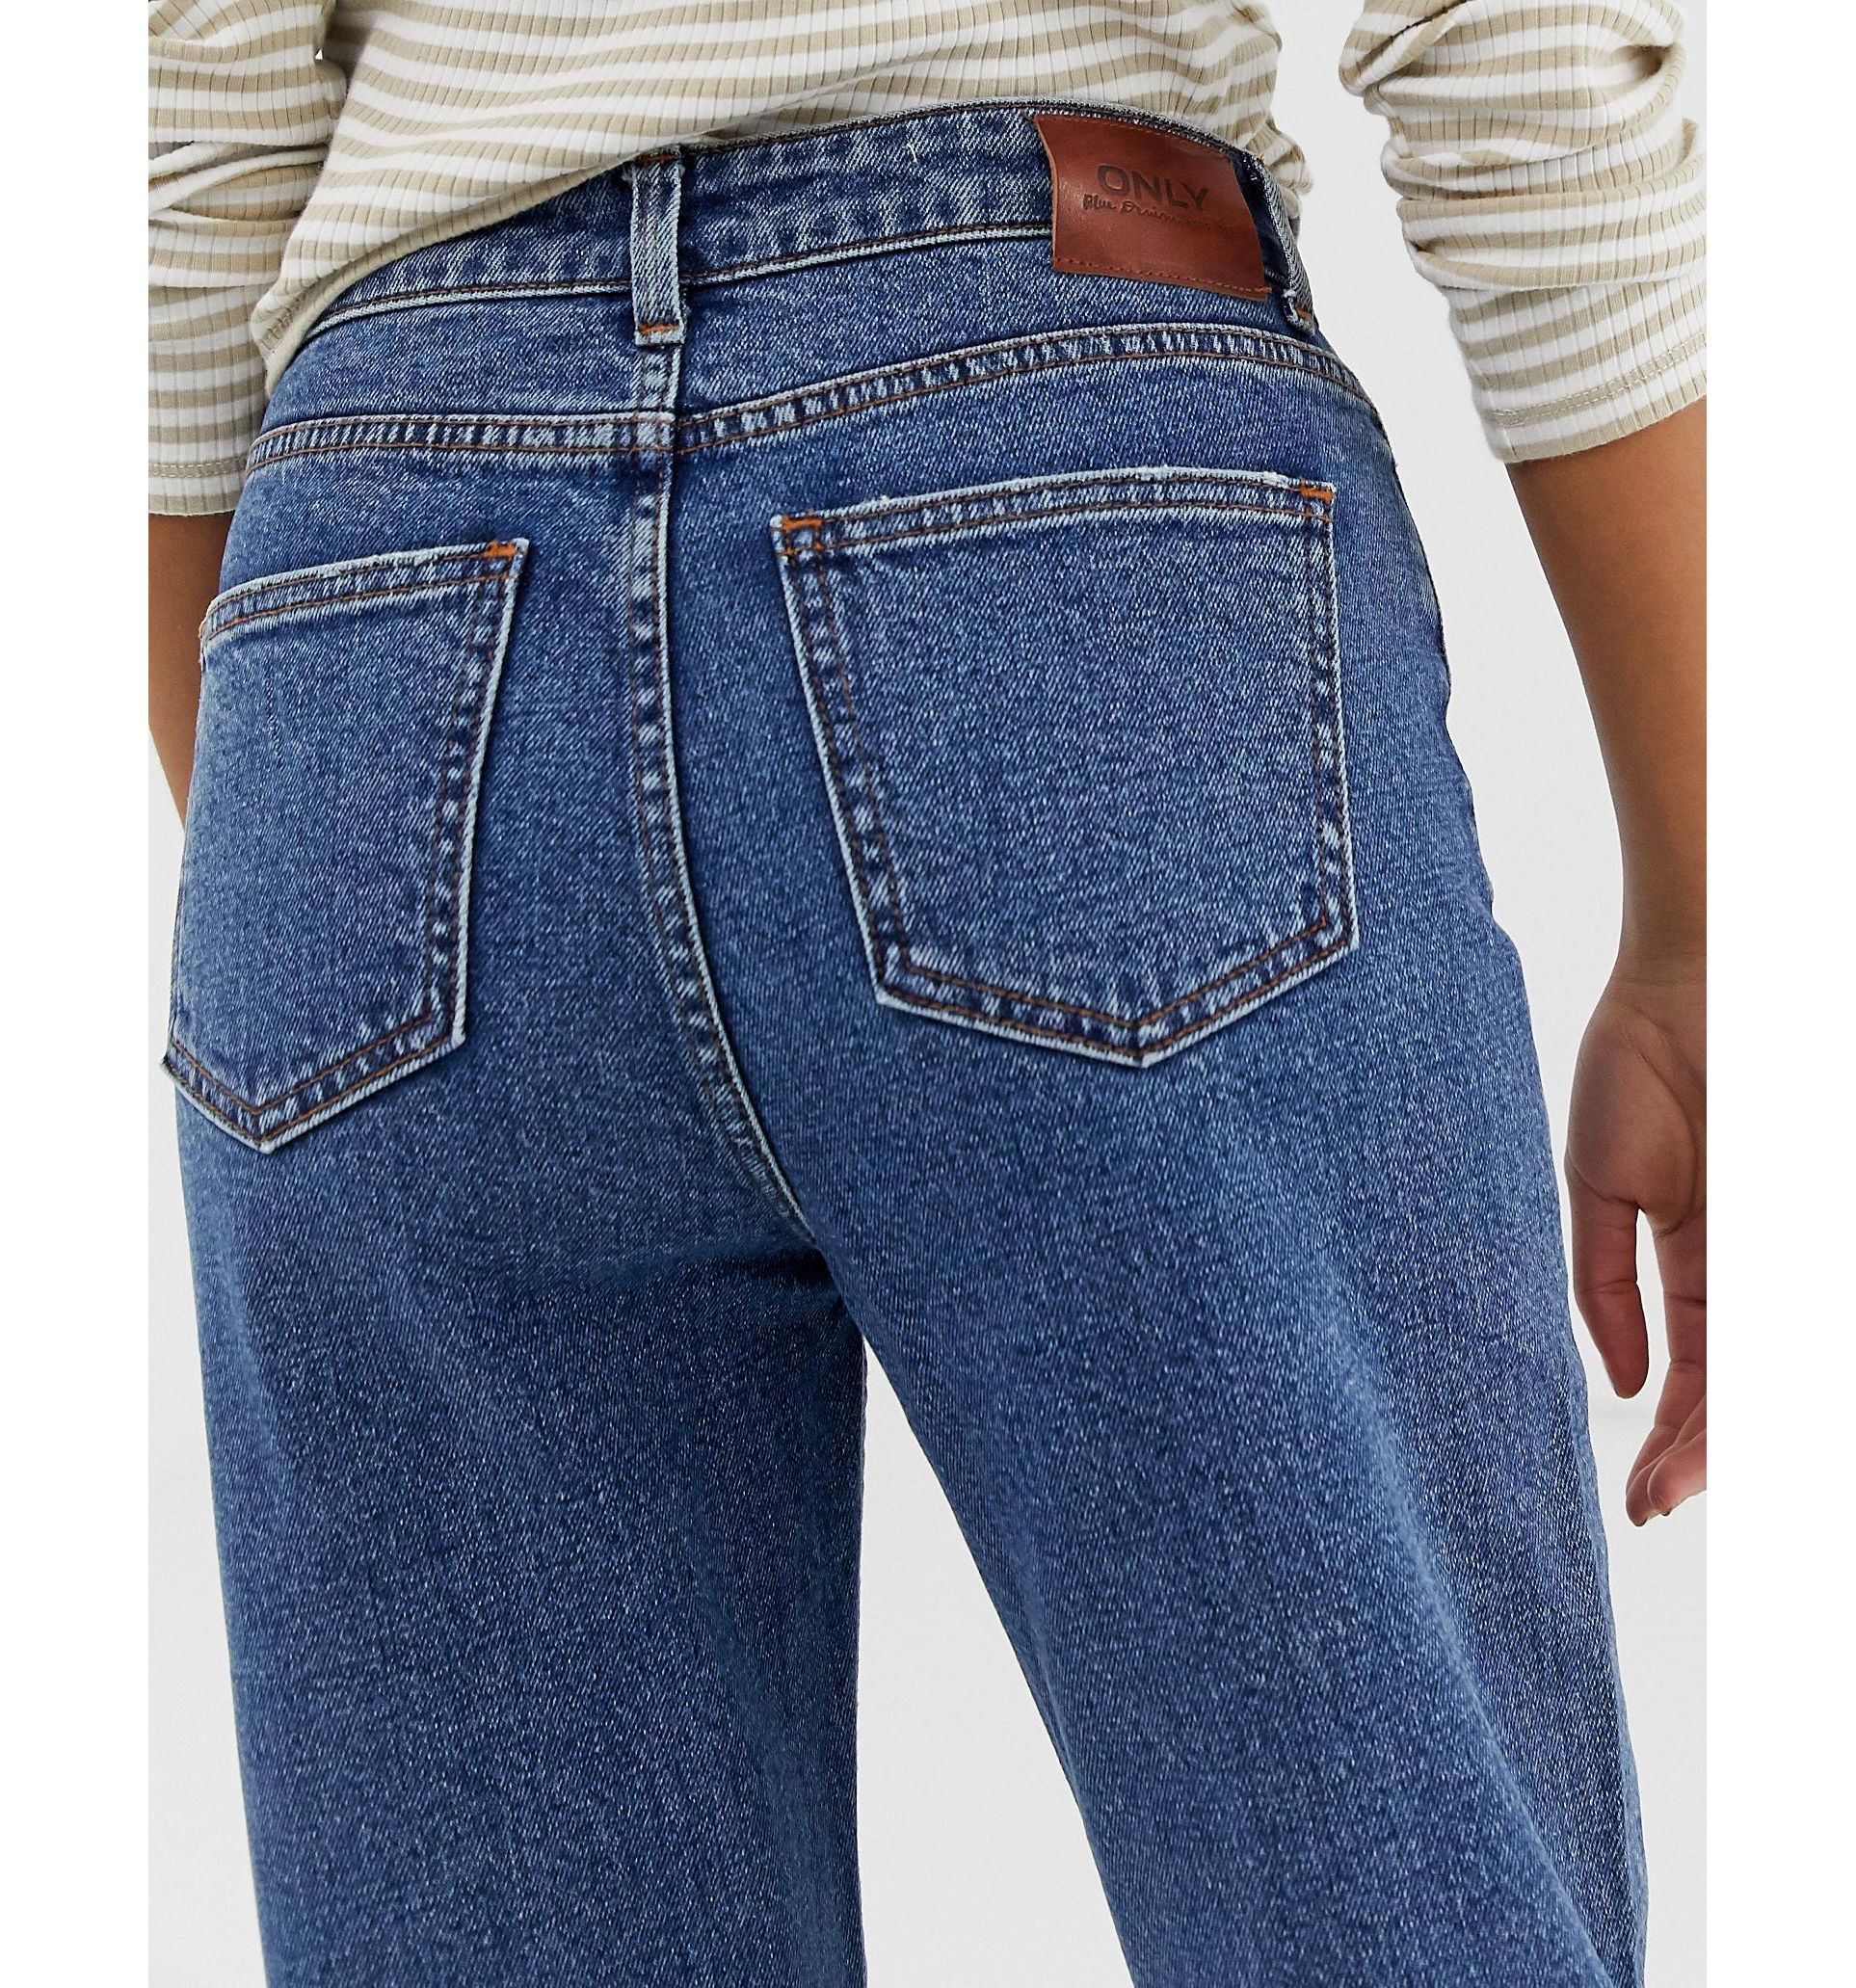 Задние карманы джинс. Задний карман джинс. Карманы джинсов. Задние карманы на джинсах. Джинсы с карманами.